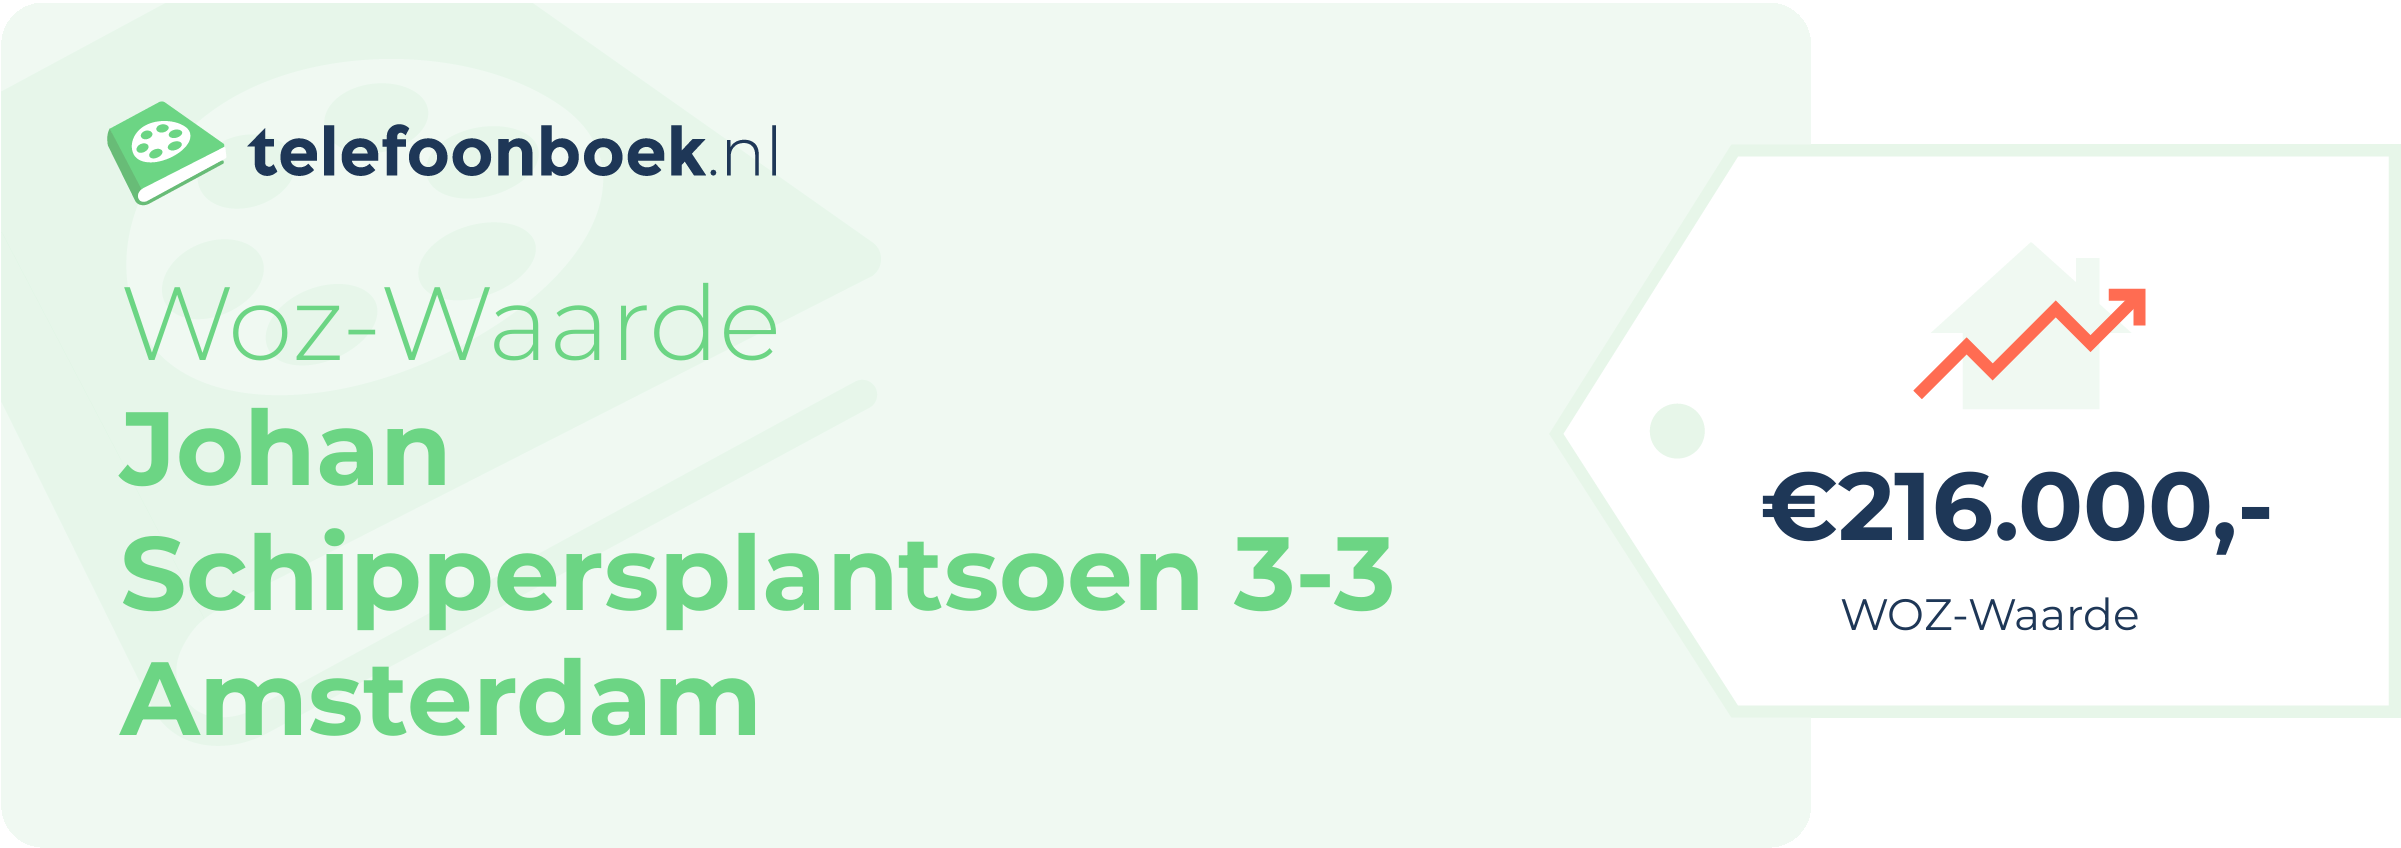 WOZ-waarde Johan Schippersplantsoen 3-3 Amsterdam